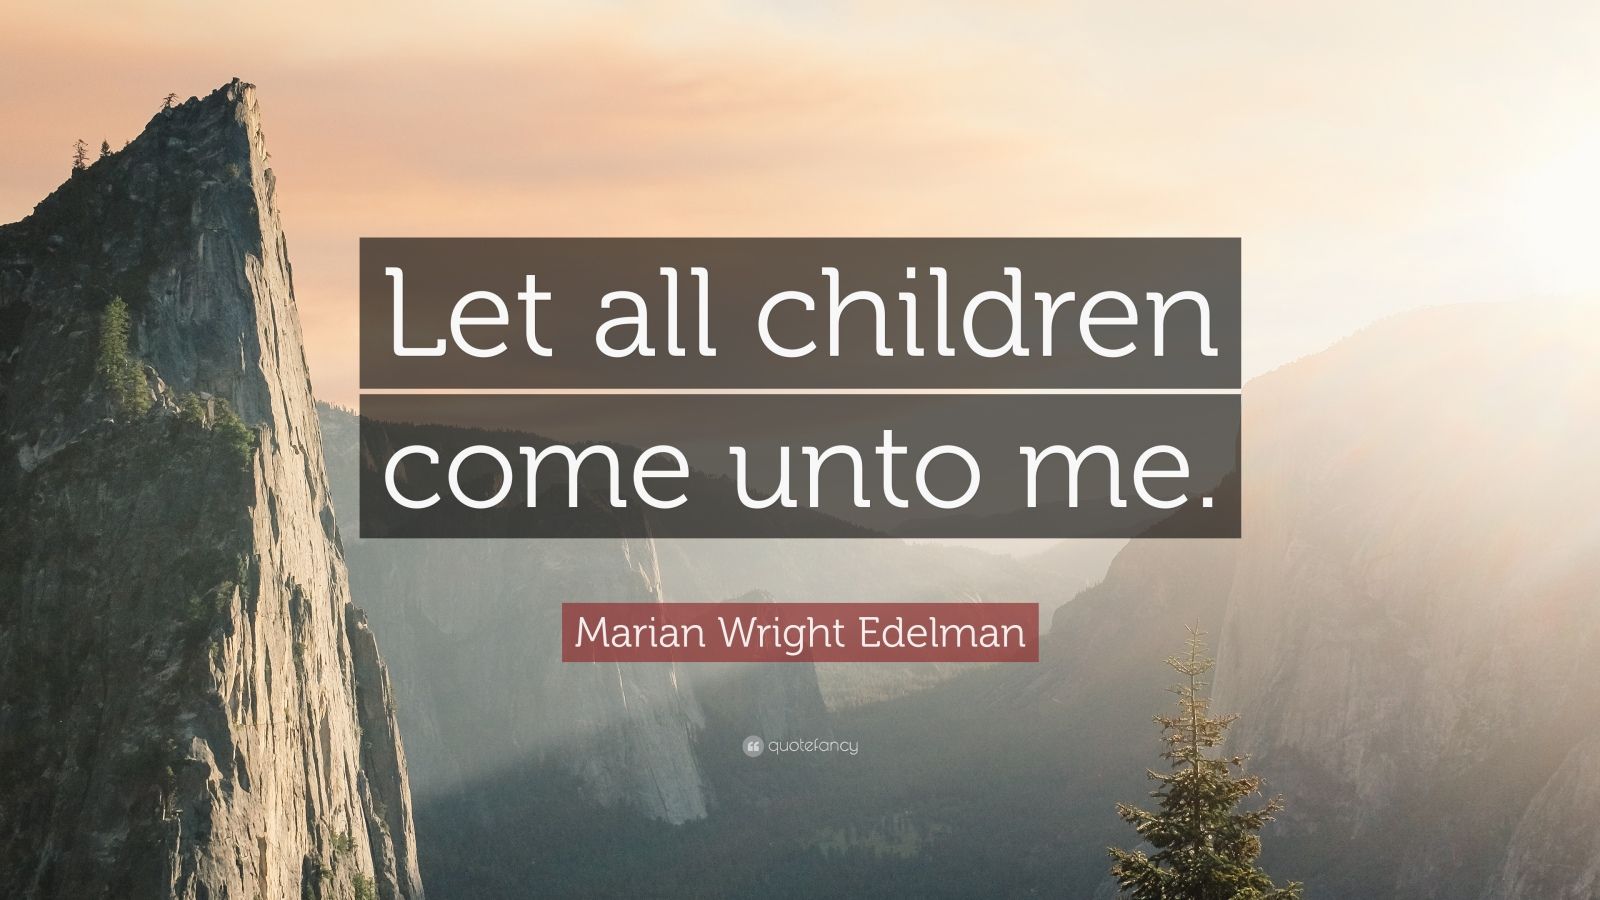 Marian Wright Edelman Quote: "Let all children come unto ...